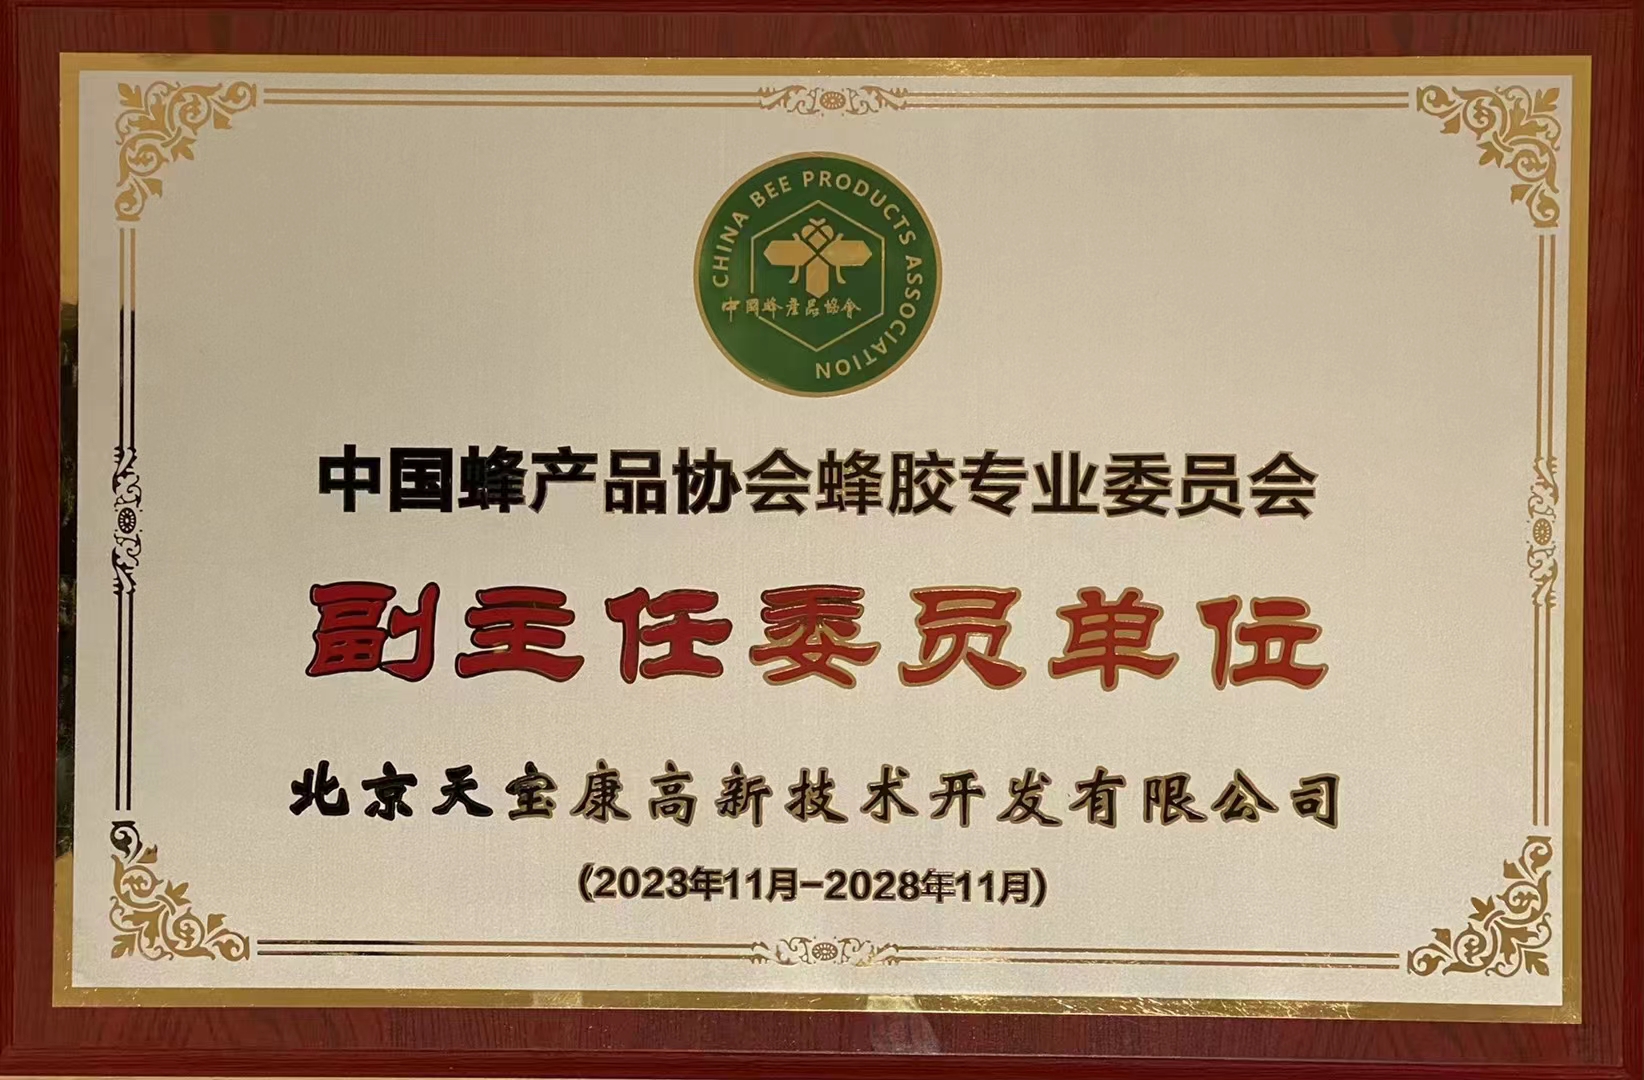 中国蜂产品协会蜂胶专委会副主任